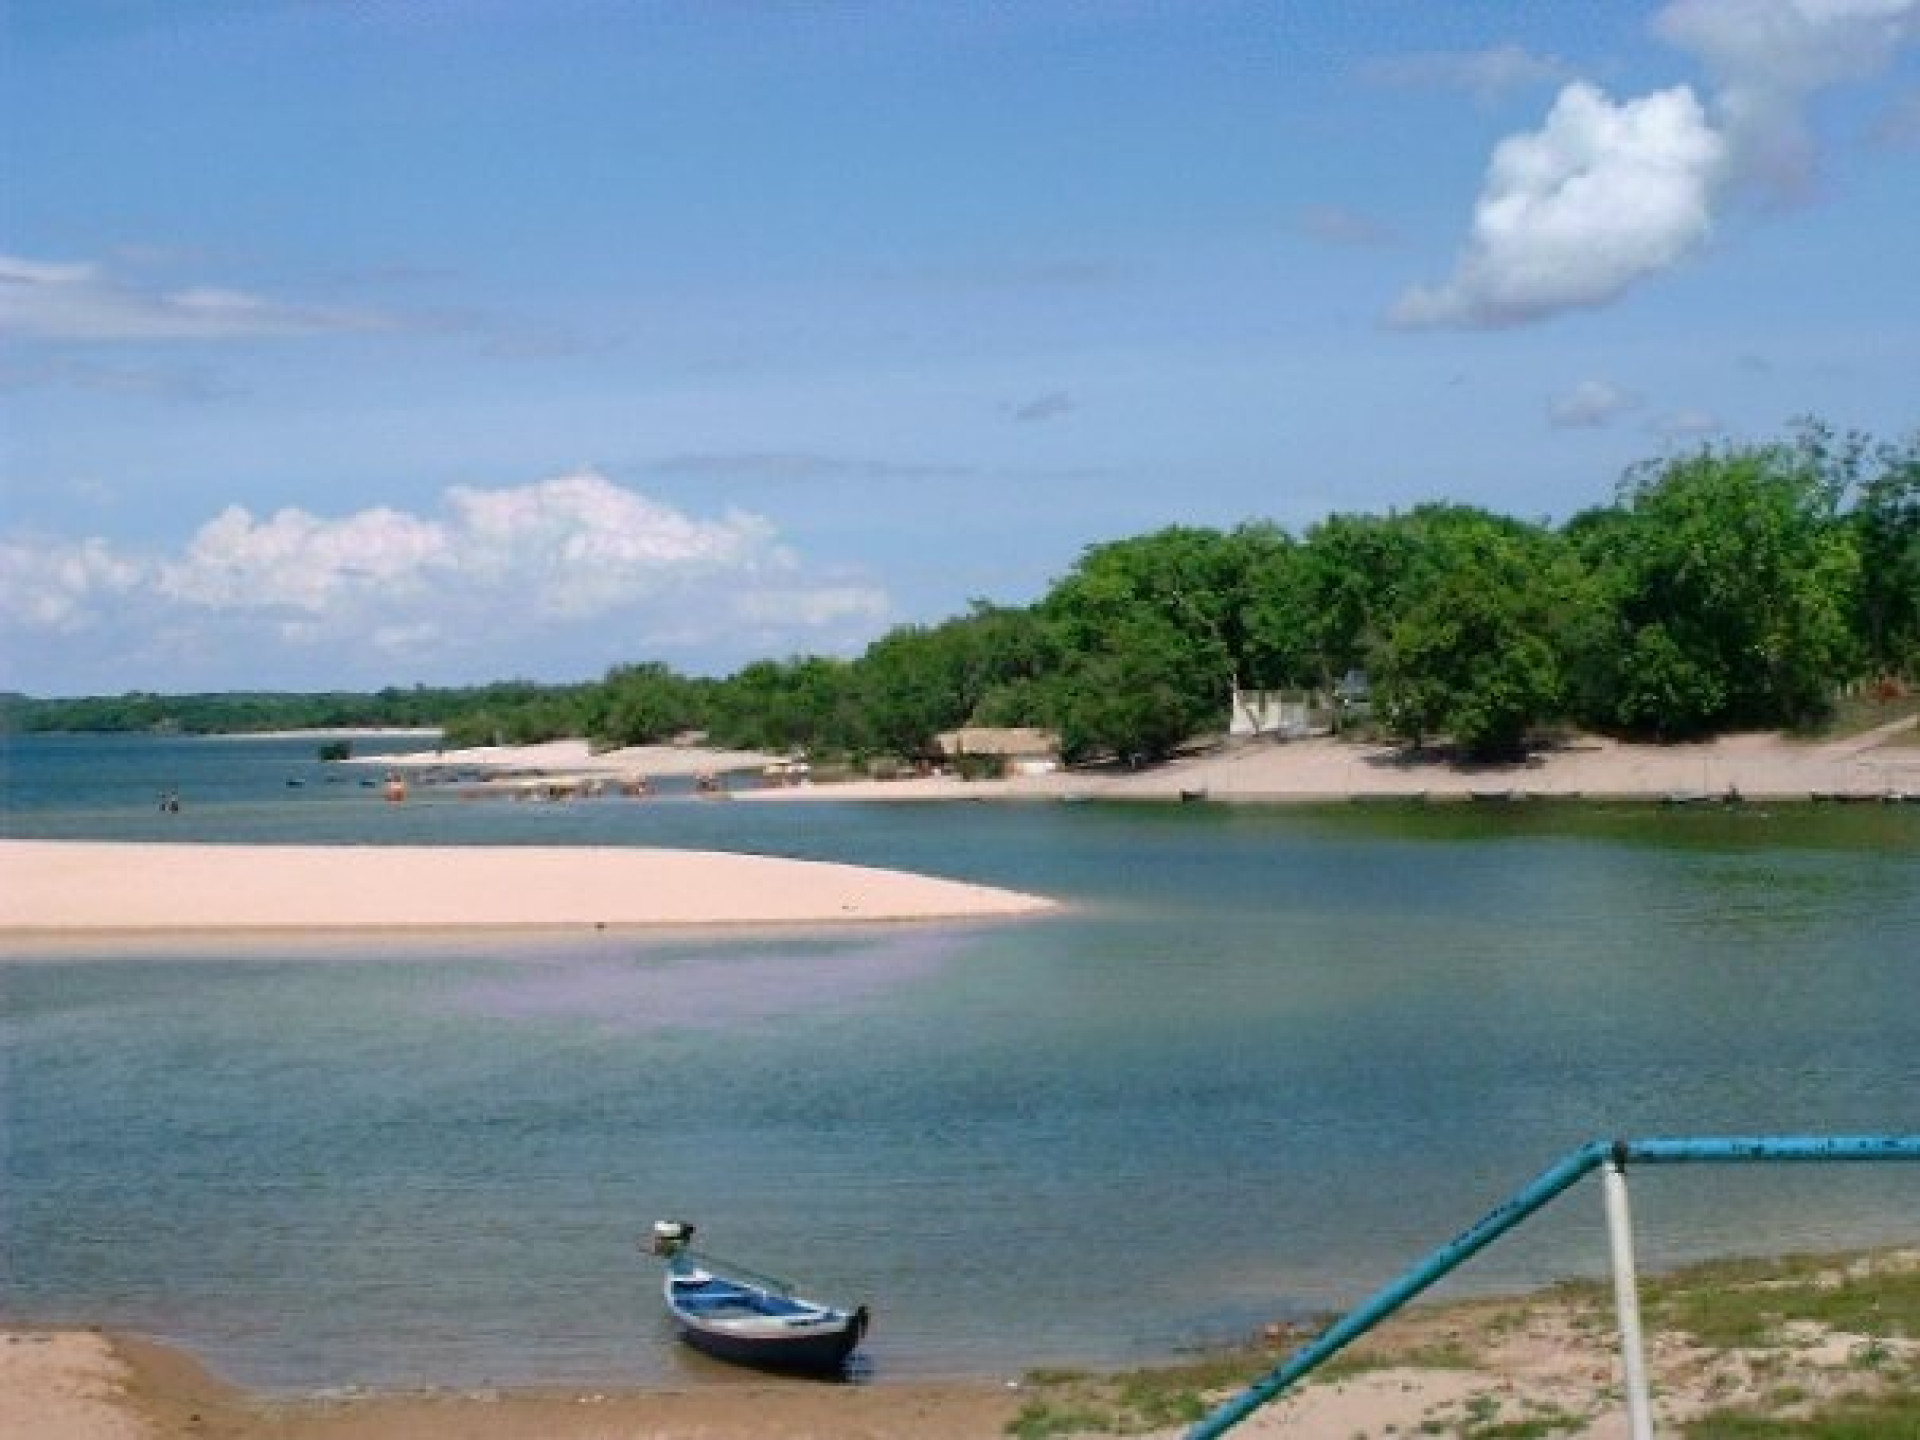 Alter do chão, Rio Tapajós (Pará), em 2009. (Foto: Arquivo Pessoal / Aquófilos)